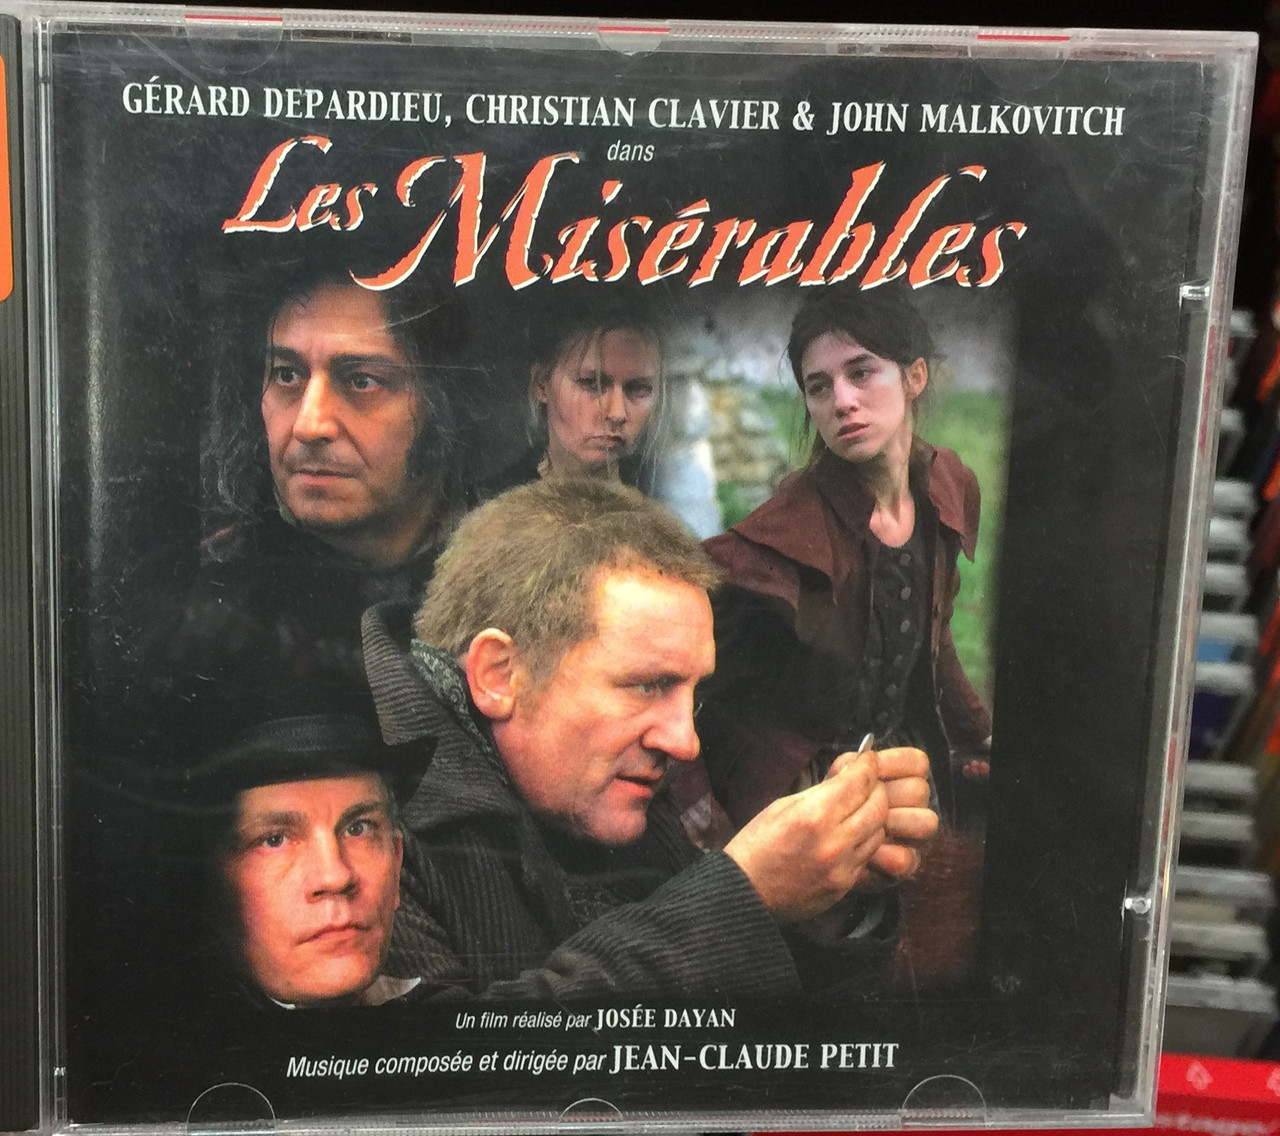 Gerard Depardieu, Christian Clavier & John Malkovitch dans Les Misérables /  Un film realise par Josee Dayan, Musique composee et dirigee par  Jean-Claude Petit ‎/ Naïve ‎Audio CD 2000 / K 1042 - bibleinmylanguage